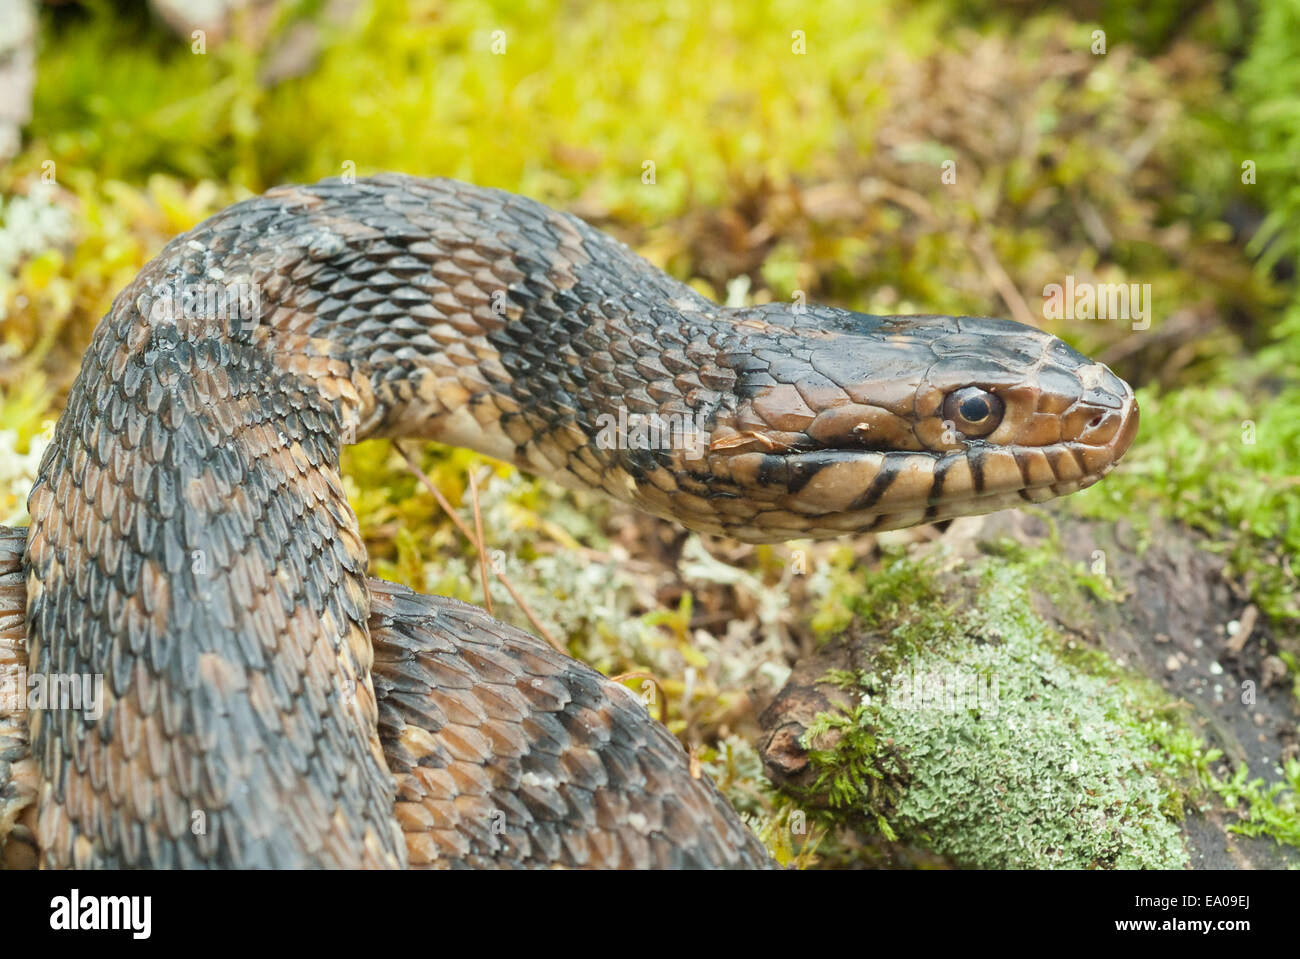 Ou dans le sud de la bande, serpent d'eau Nerodia fasciata, originaire d'Europe centrale et sud-est des États-Unis Banque D'Images